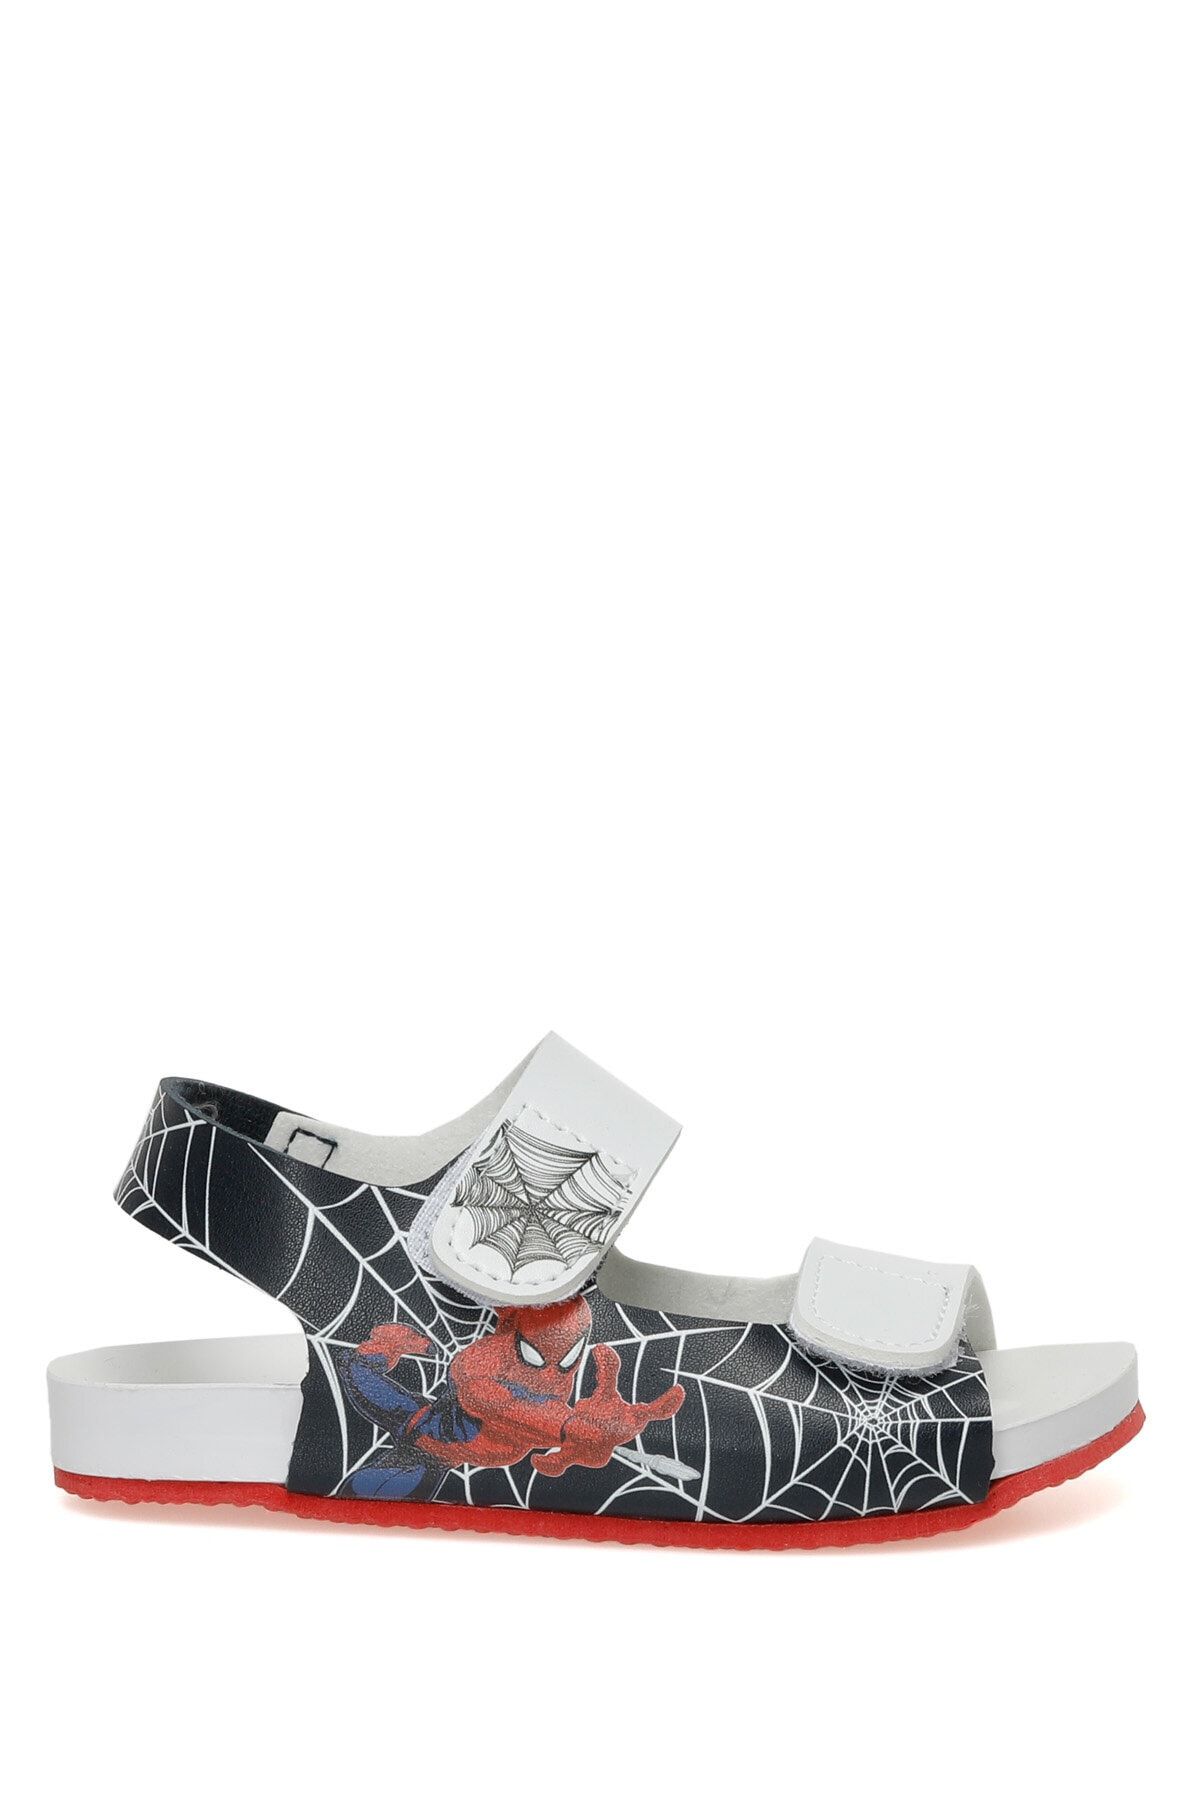 Spiderman Spada.p3fx Beyaz Erkek Çocuk Sandalet